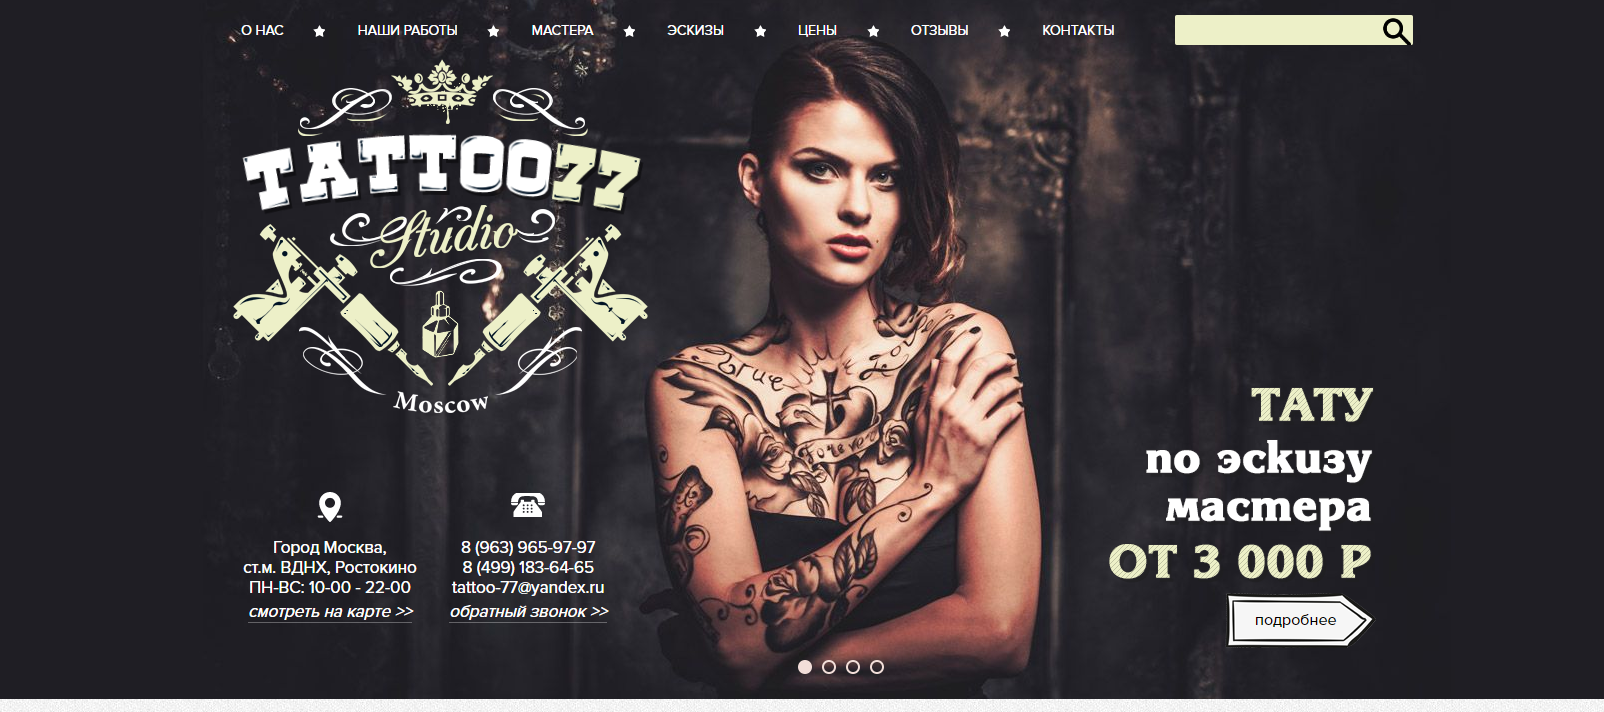 Tattoo-77 - тату салон в Москве - фото сайта - эмблема